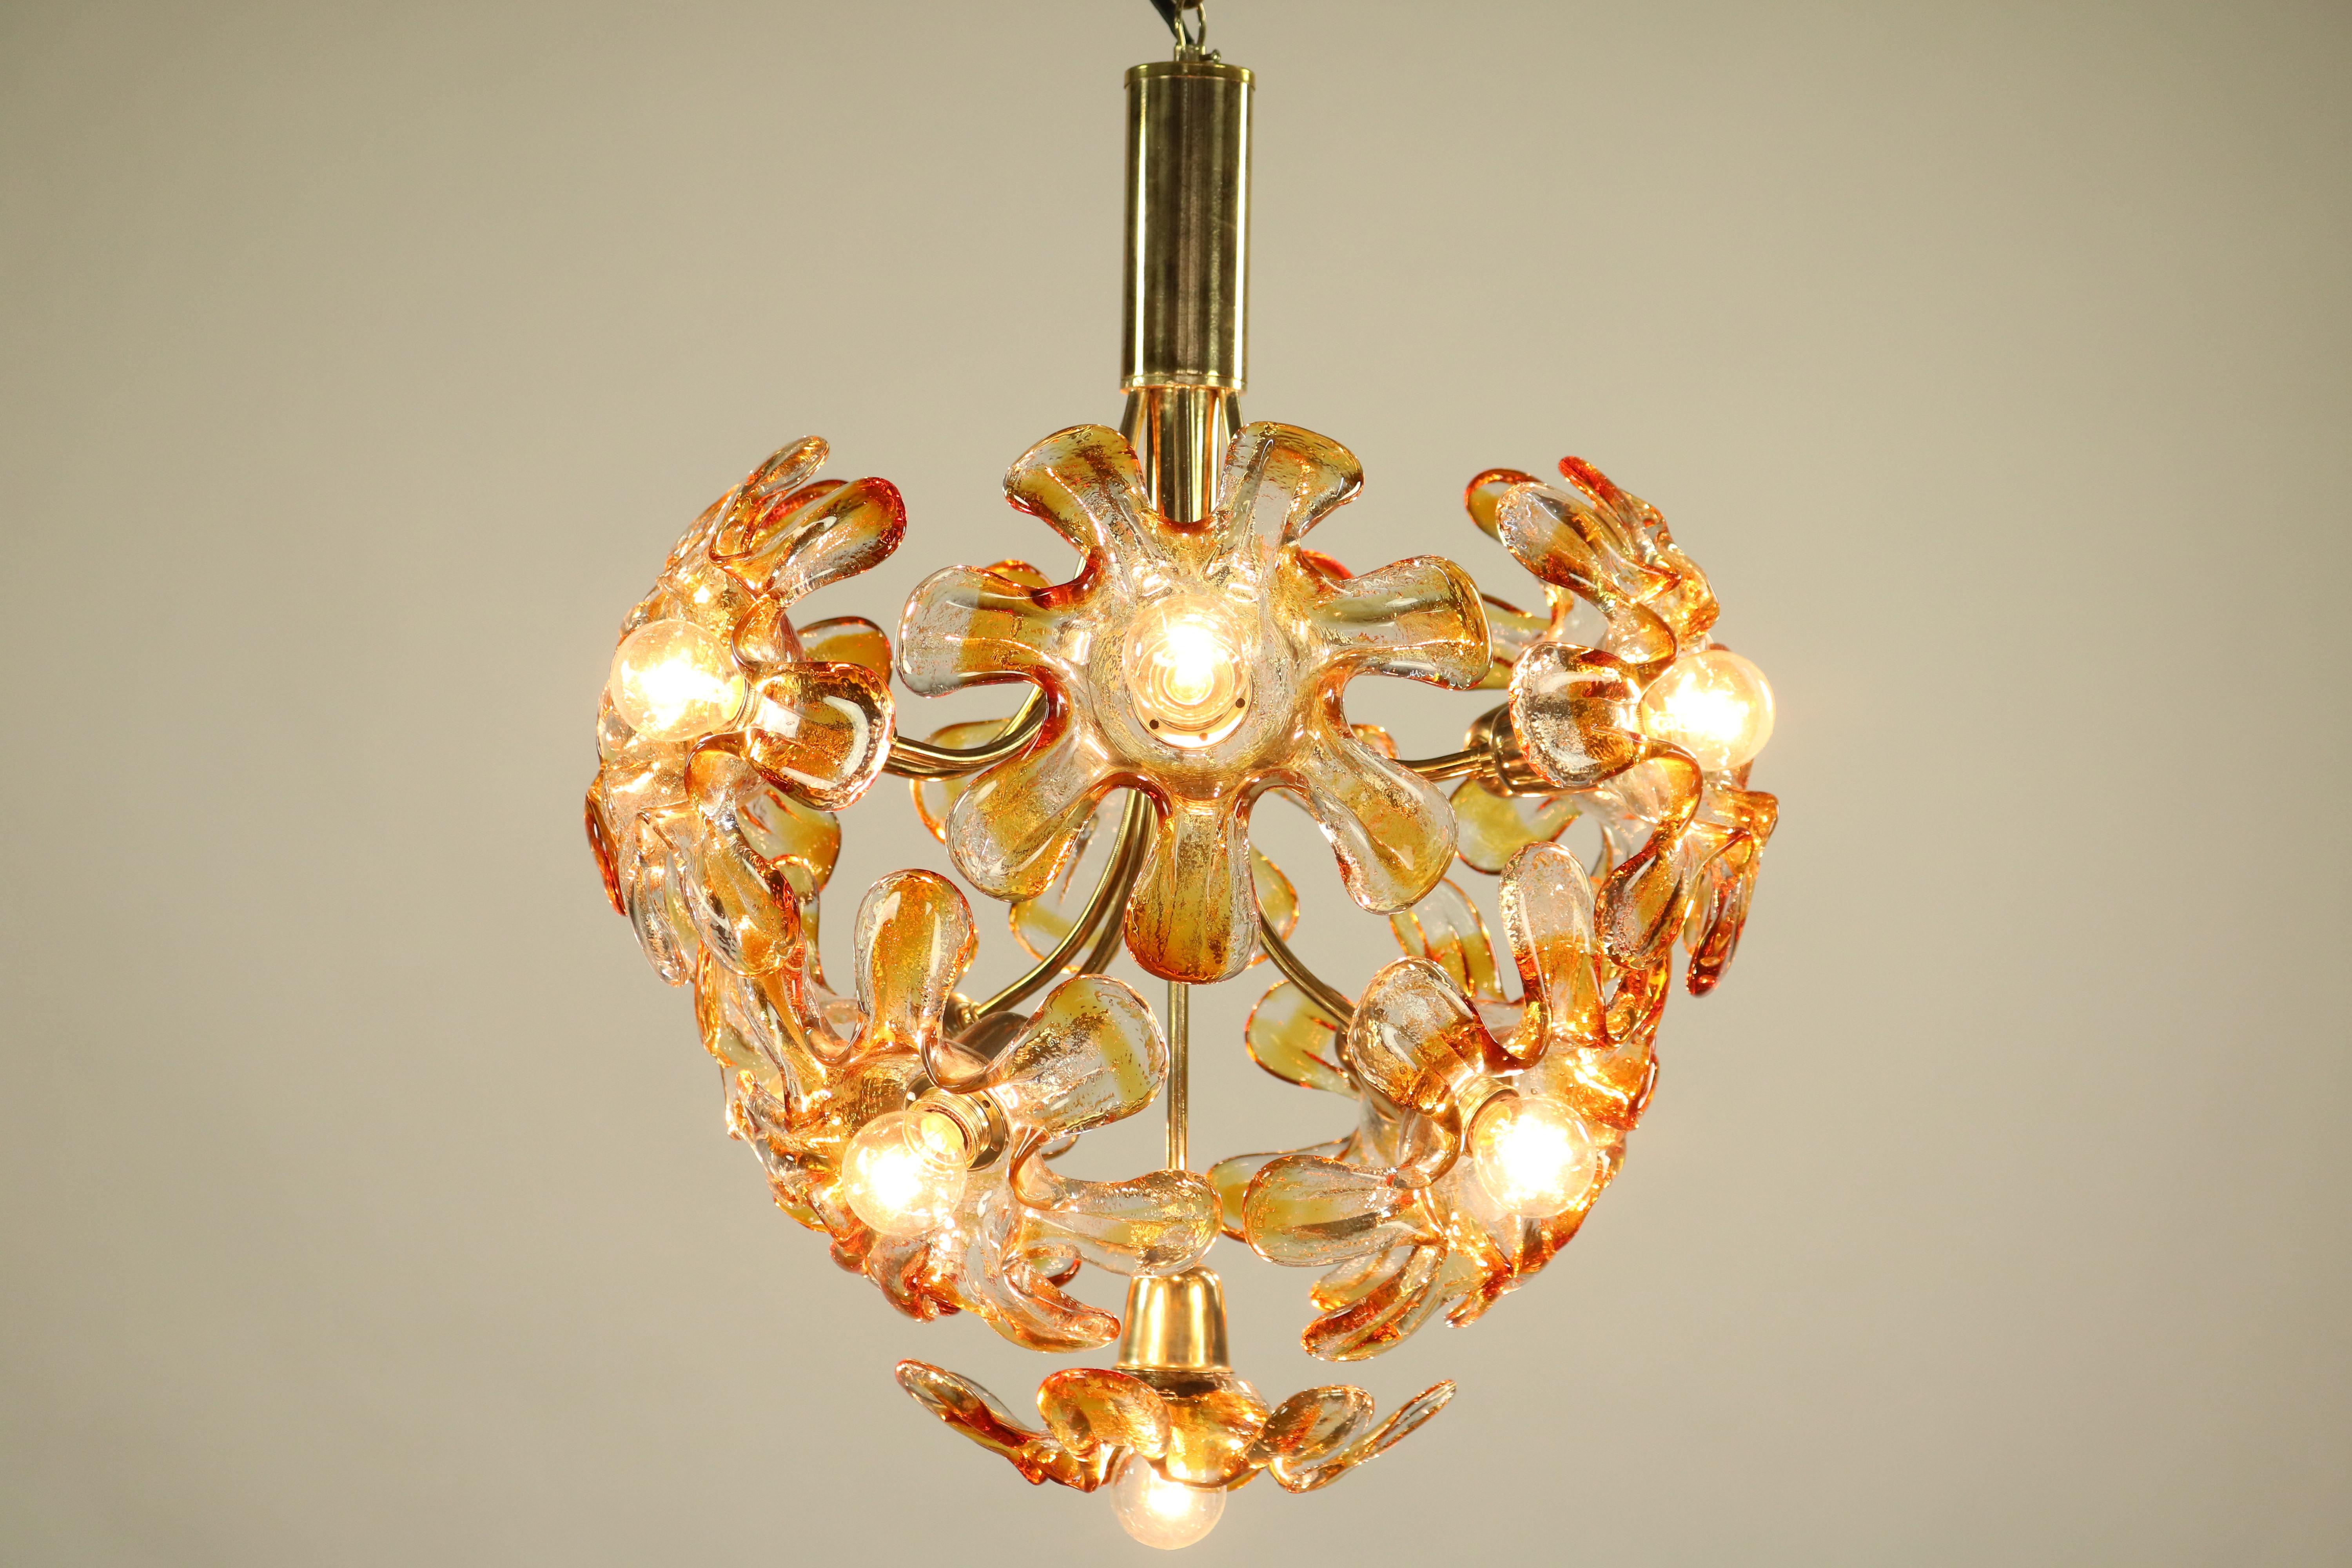 Mid-Century Modern Mazzega Murano Glass Flower or Blossom Chandelier 11 Light Pendant Lamp For Sale